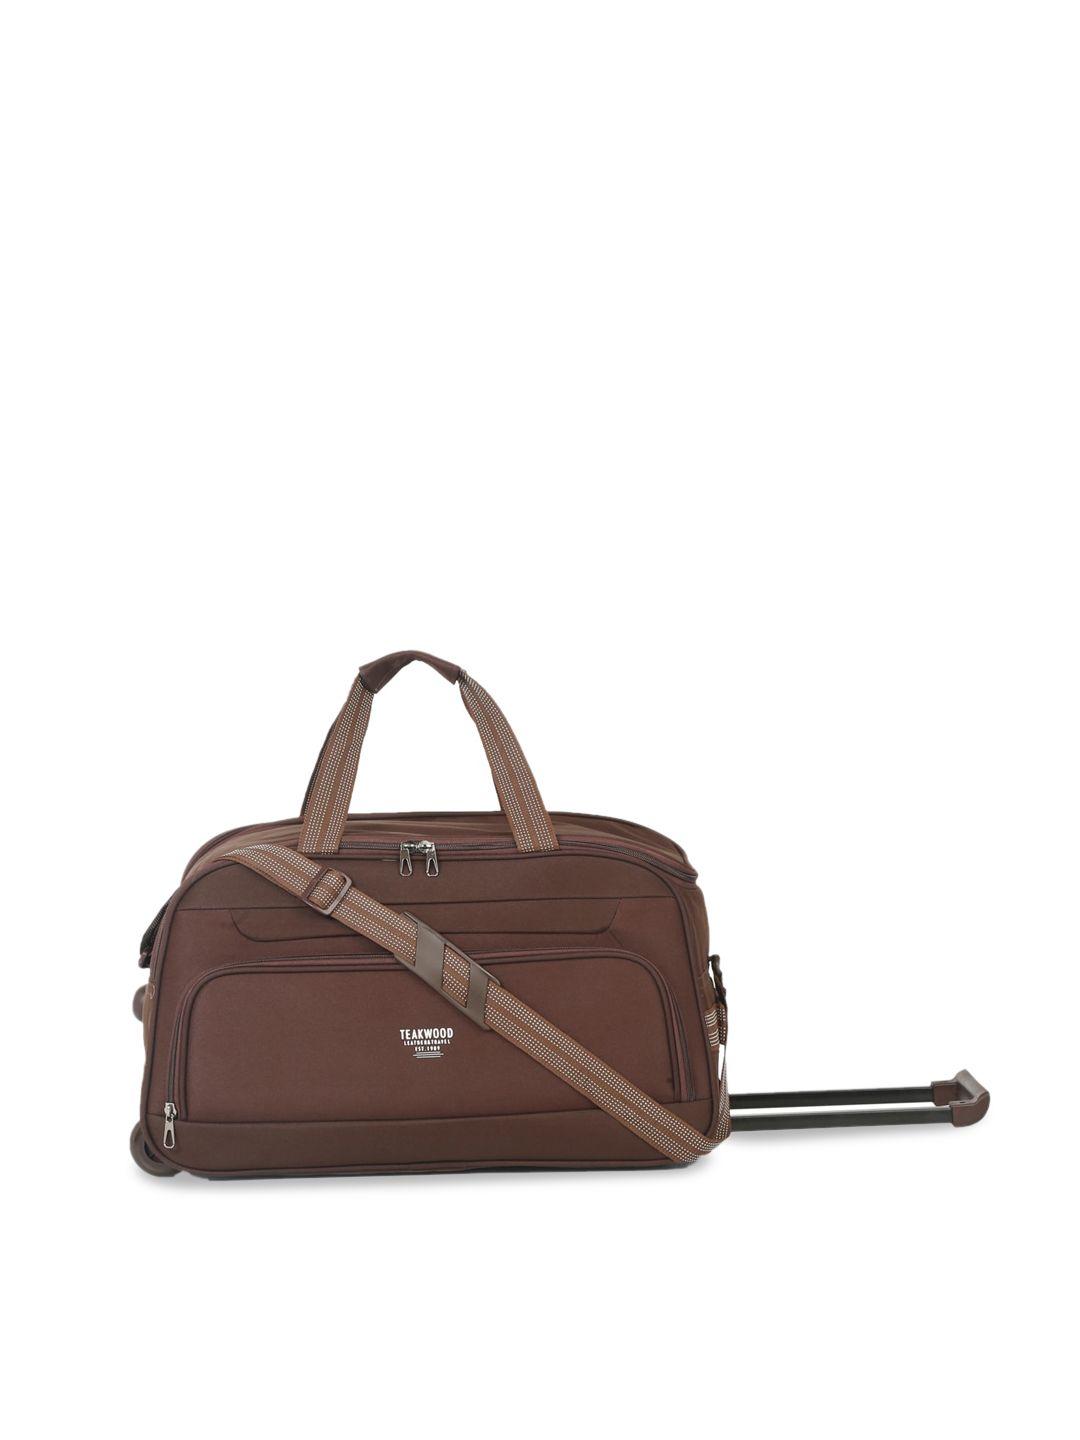 teakwood leathers tear resistant large travelduffelbag